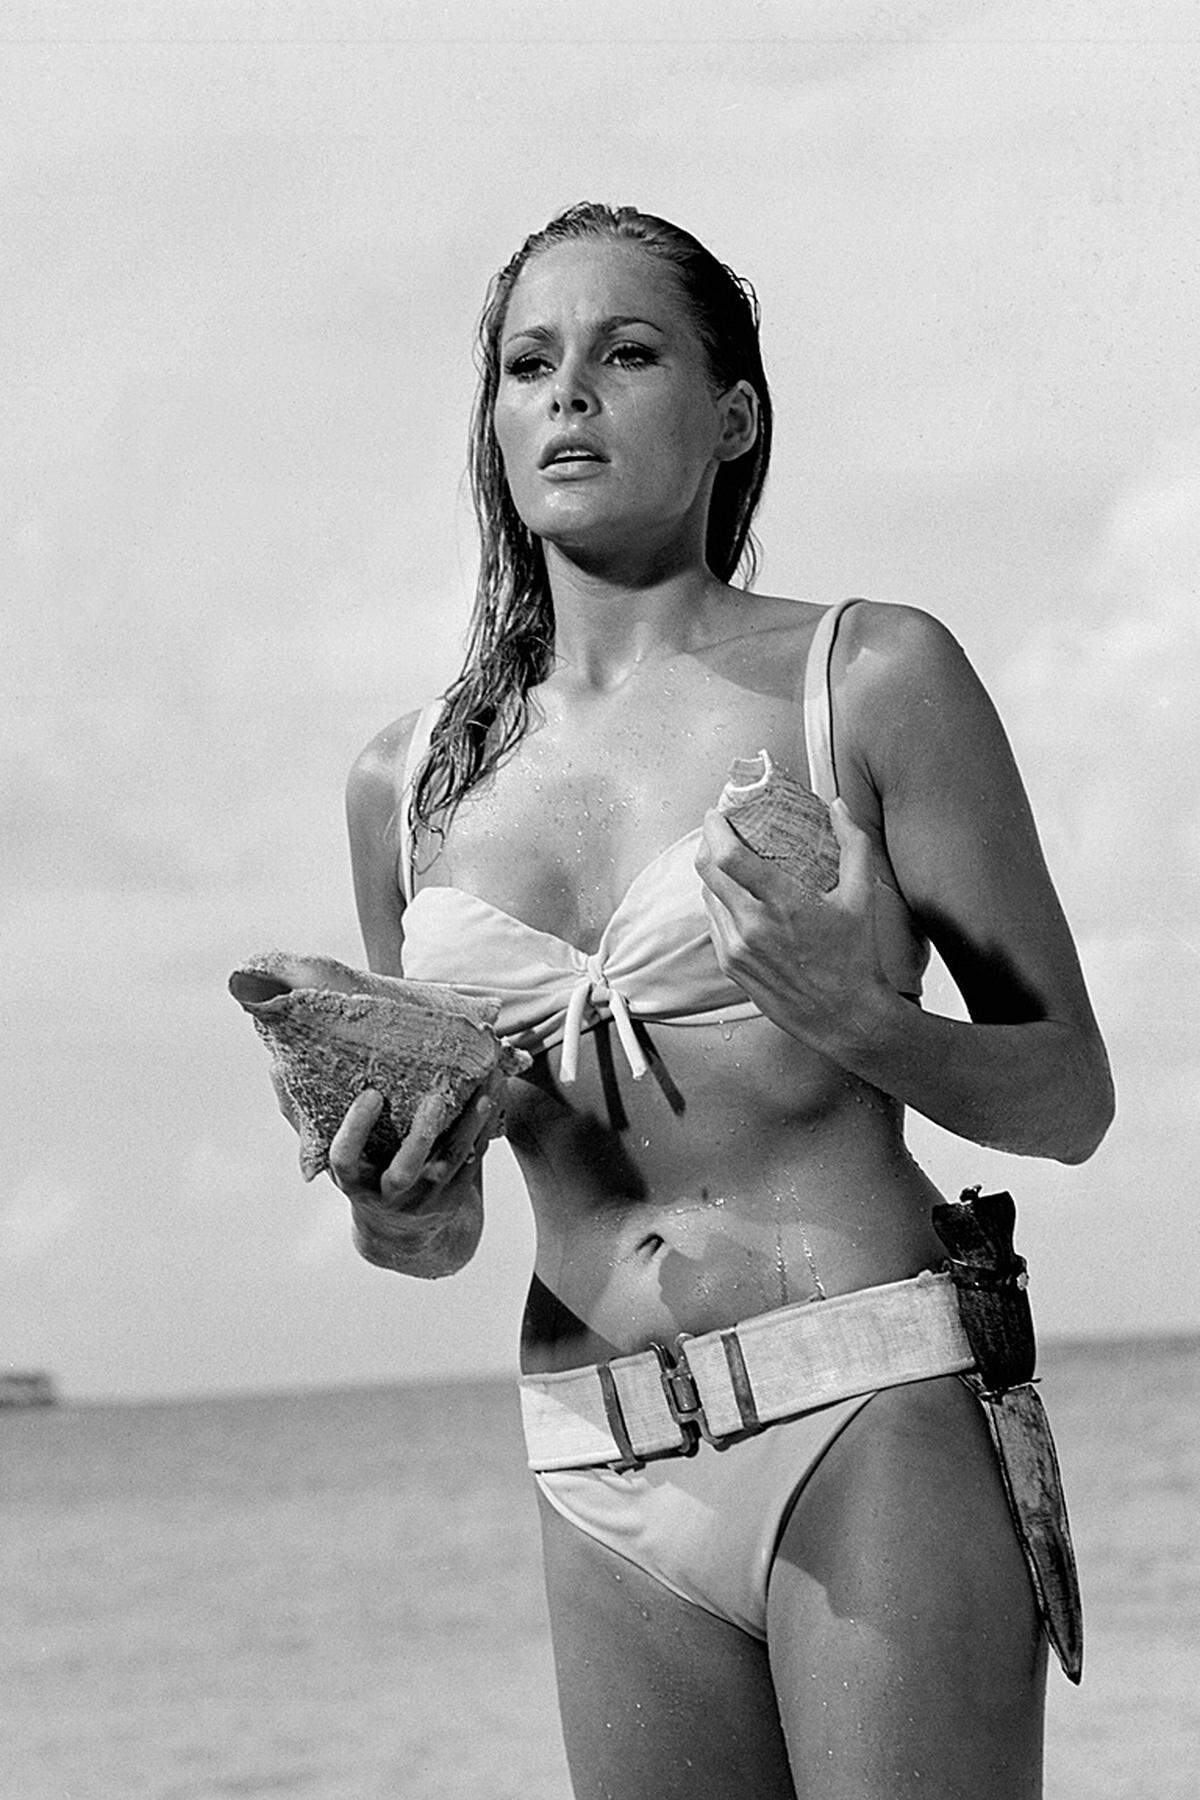 Sie war die Erste: Ursula Andress entstieg in "Dr. No" den Fluten und setzte sich mit ihrem weißen Bikini im Gedächtnis jedes (männlichen) Zusehers fest. Unvergesslich der Dialog, mit dem die gebürtige Schweizerin als Honey Rider eingeführt wurde:  Honey Ryder: Are you looking for shells too? James Bond: No, I'm just looking. 